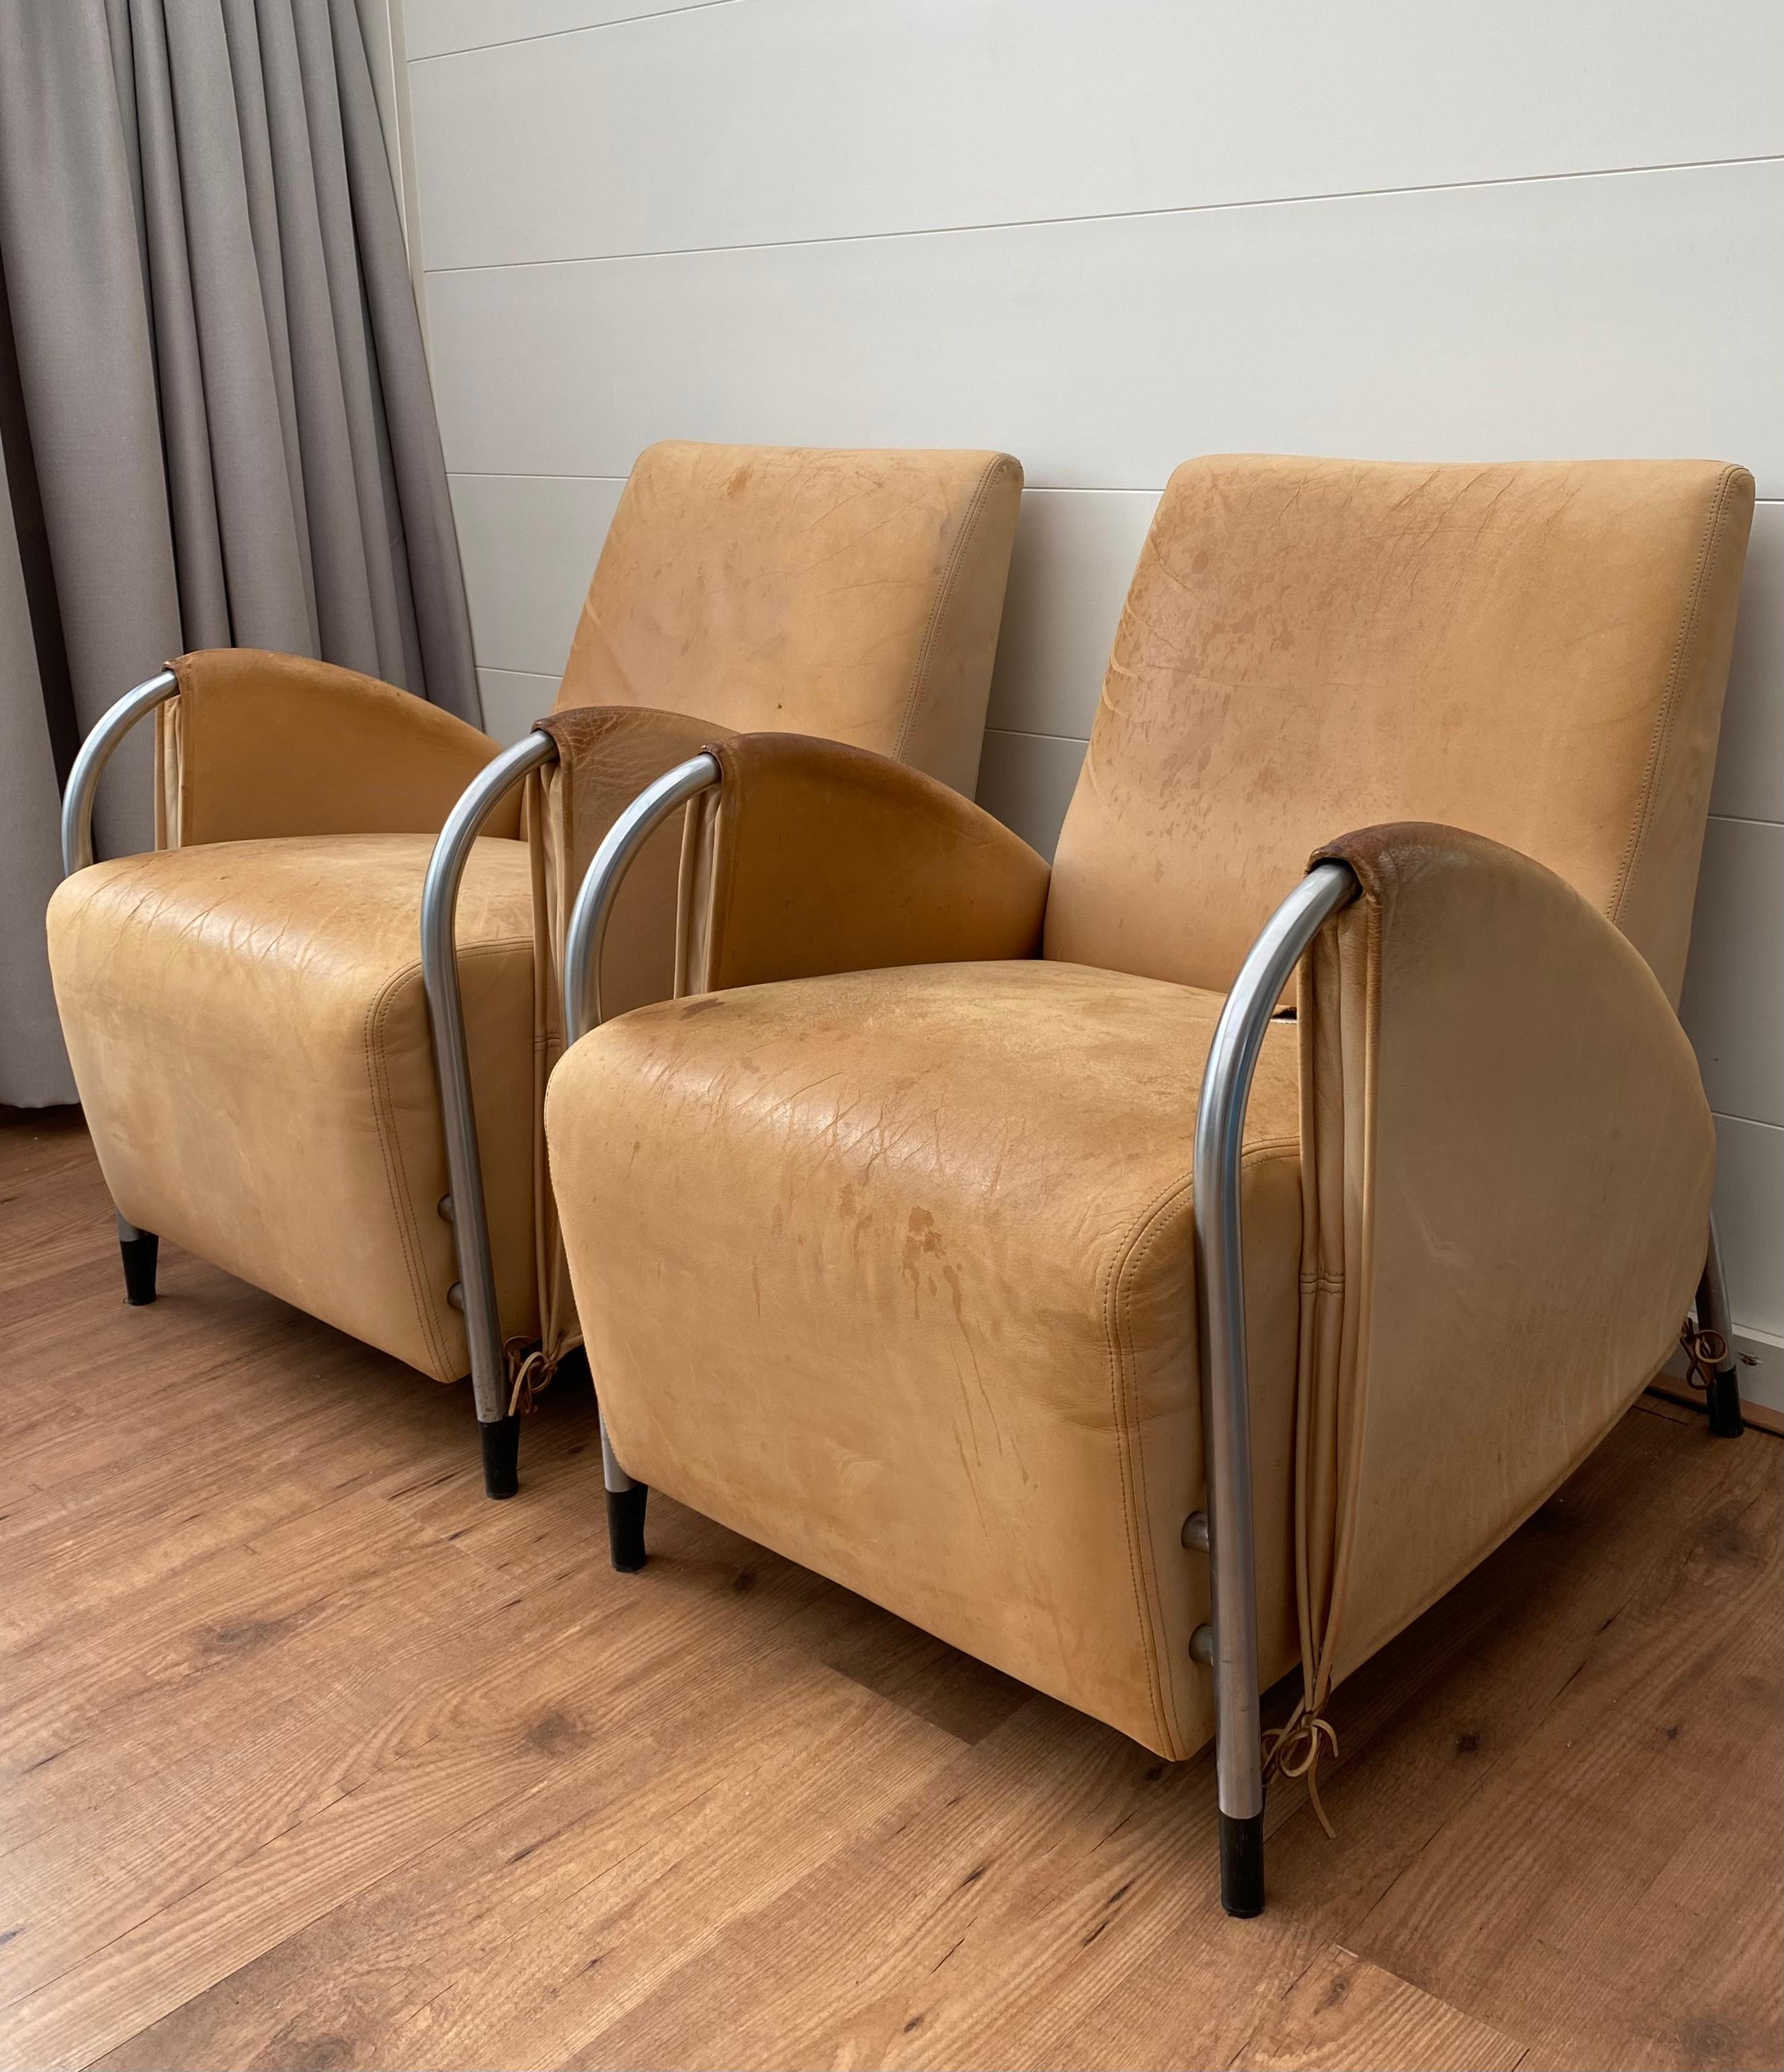 Paire de fauteuils rares et très recherchés, conçus par Jan des Bouvrie pour Gelderland. Les chaises sont dotées d'une base tubulaire avec des accents noirs et sont revêtues de cuir épais. Les deux chaises ont besoin d'être retapissées car le cuir